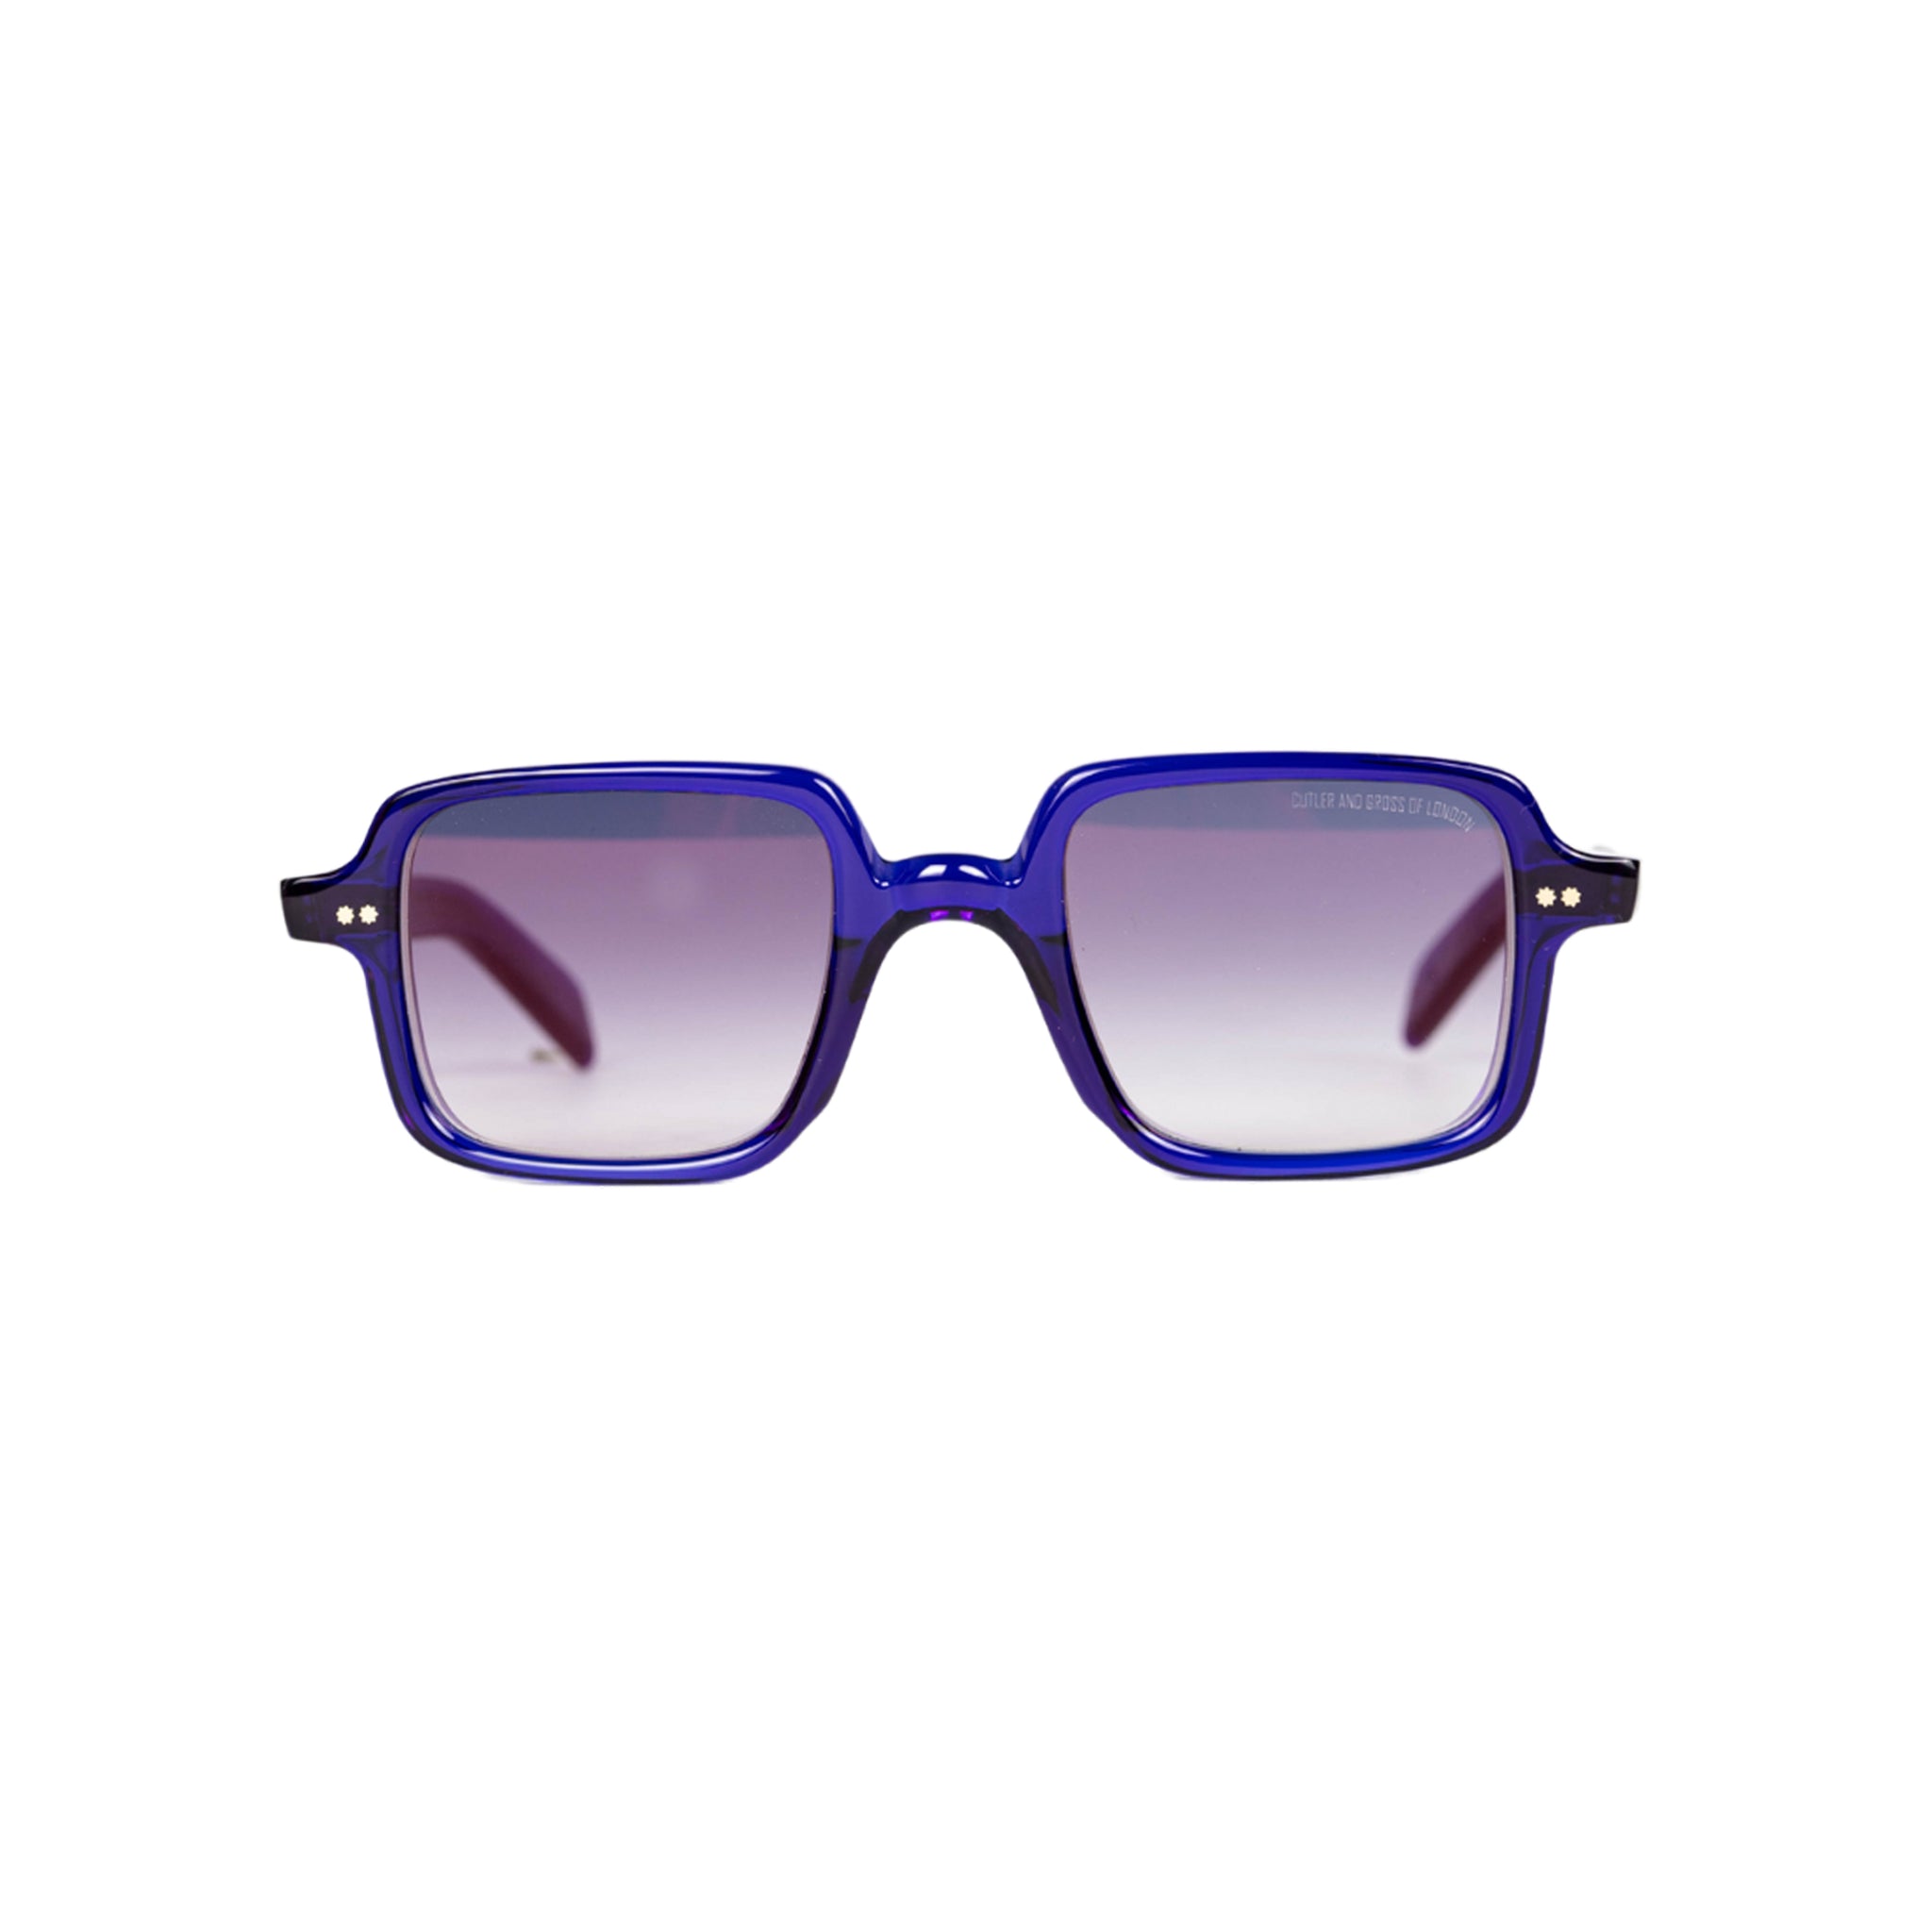 Cutler and Gross Gr02 Rectangle occhiali da sole